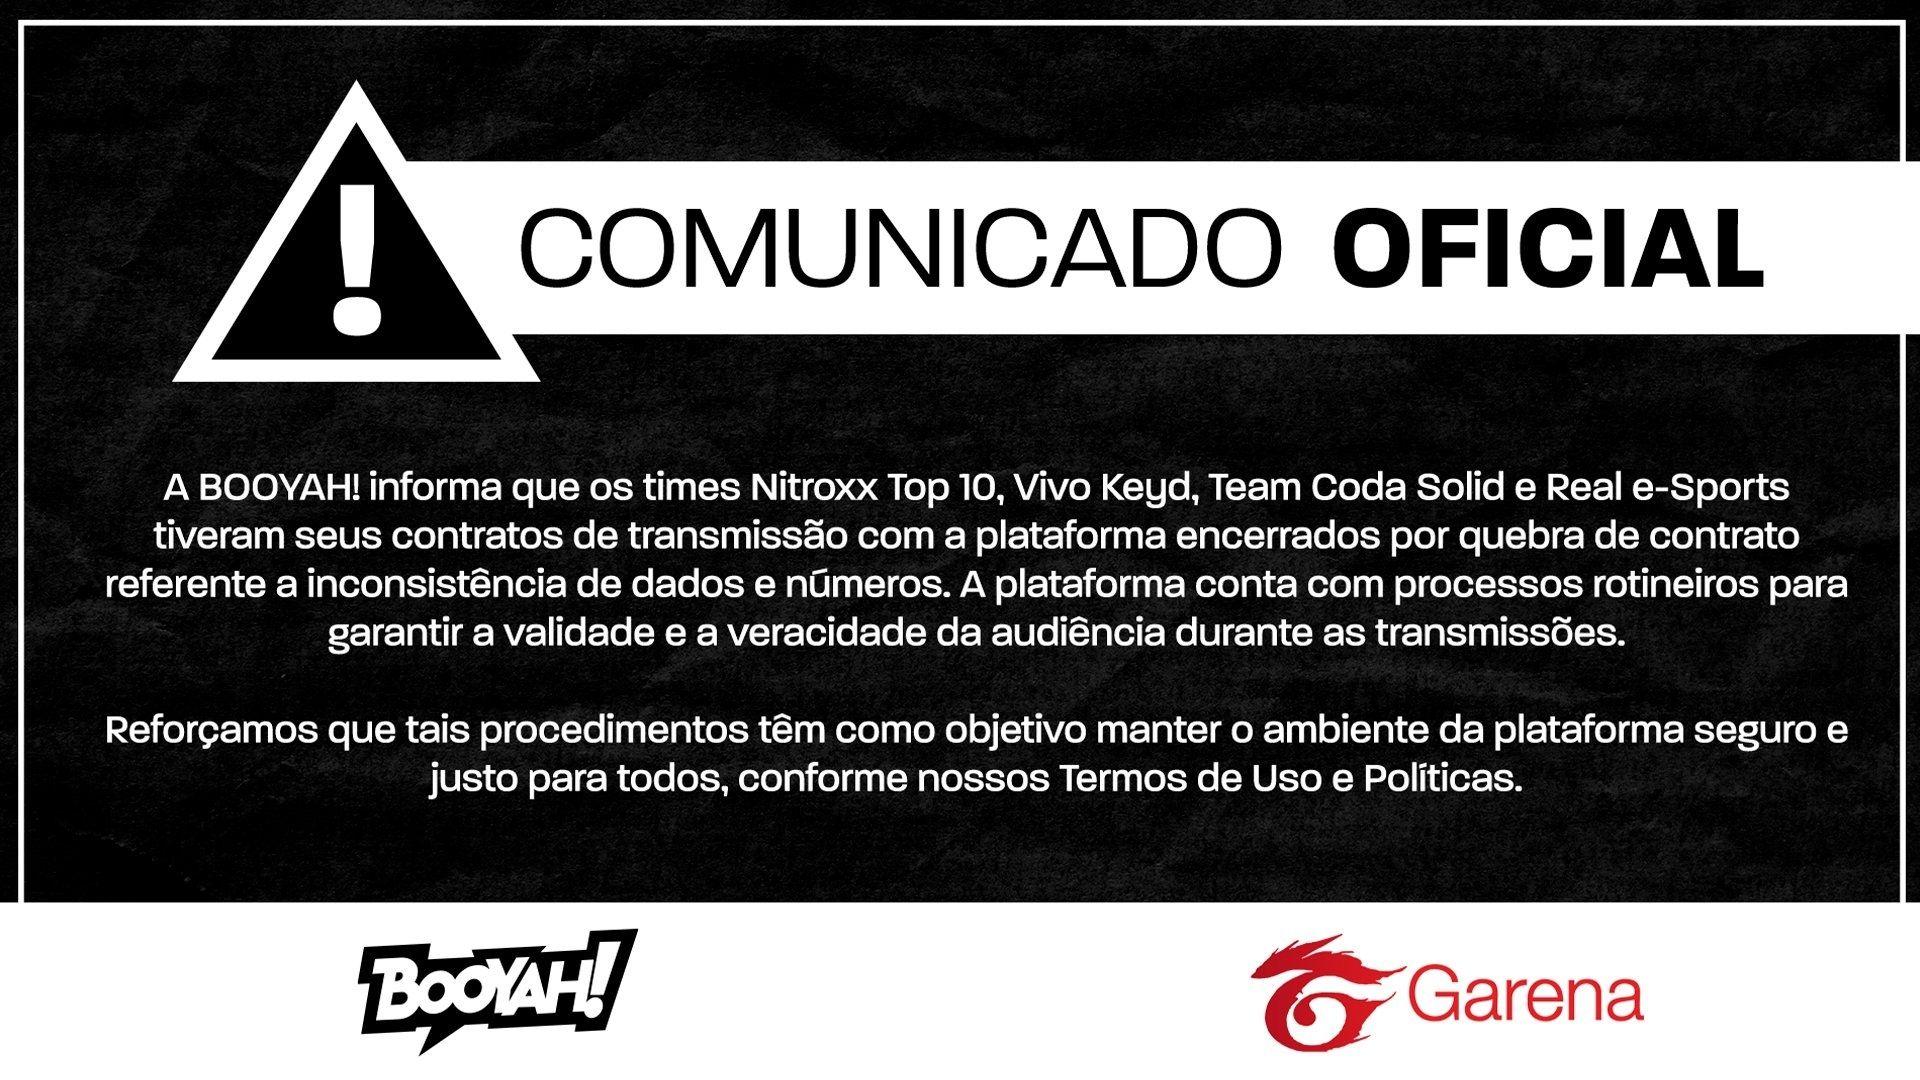 Garena exclui Vivo Keyd, Nitroxx Top 10, Real e-Sports e Team Coda Solid dos contratos com a Booyah